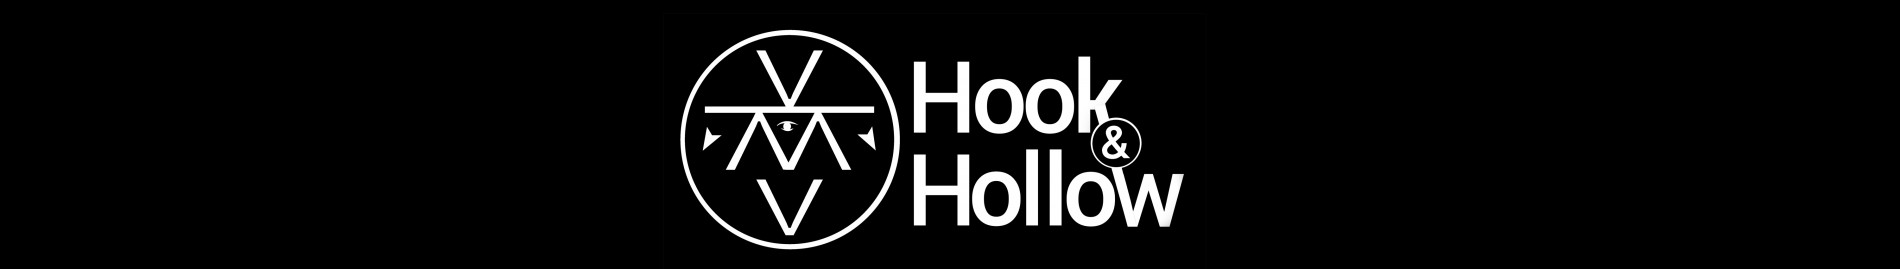 Hook & Hollow